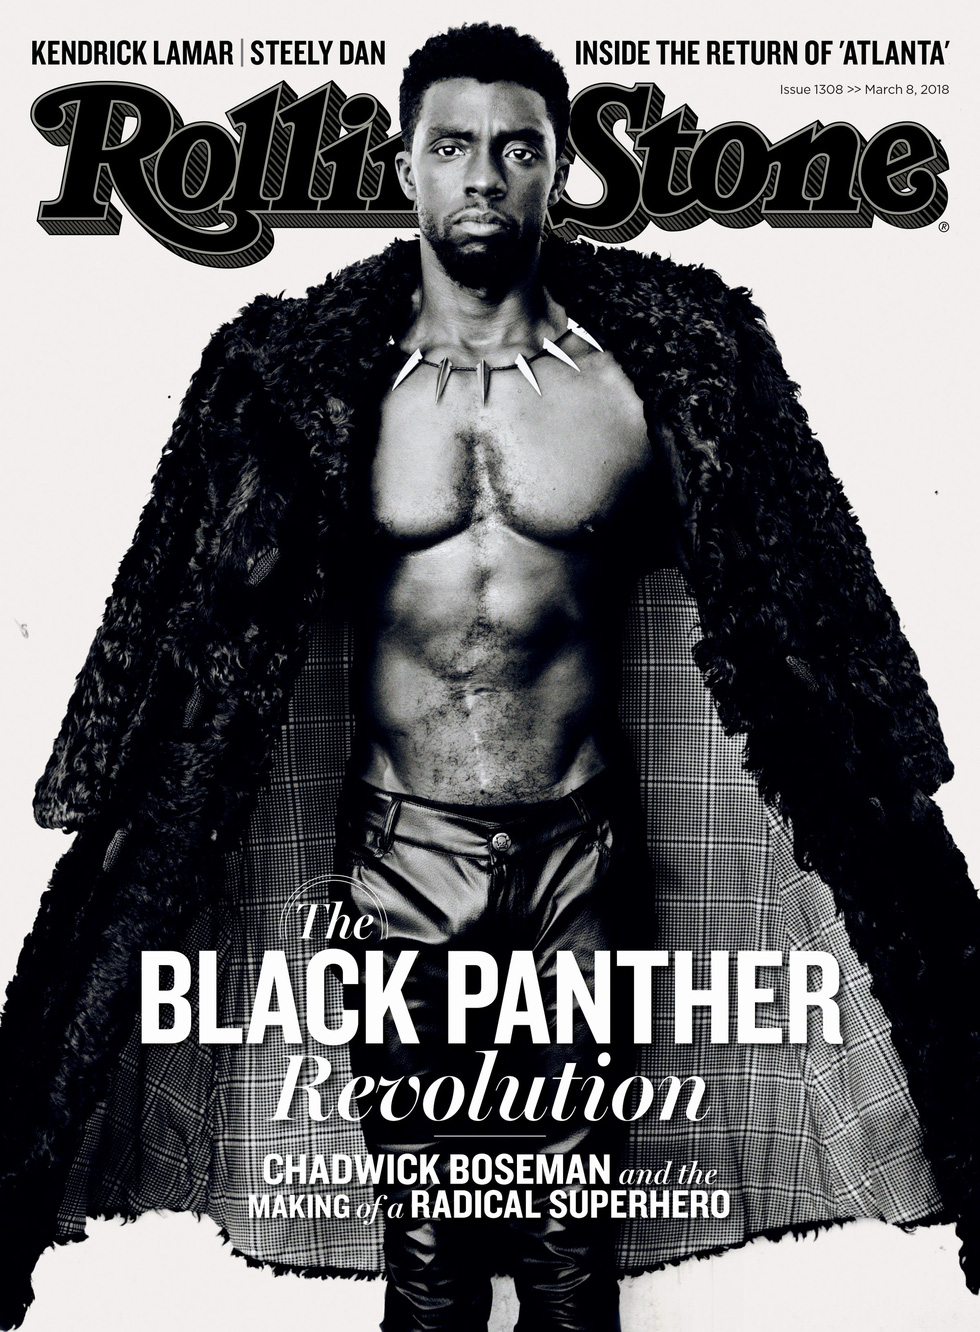 Báo đen Chadwick Boseman - vua Wakanda uy dũng trong lòng người hâm mộ - Ảnh 5.